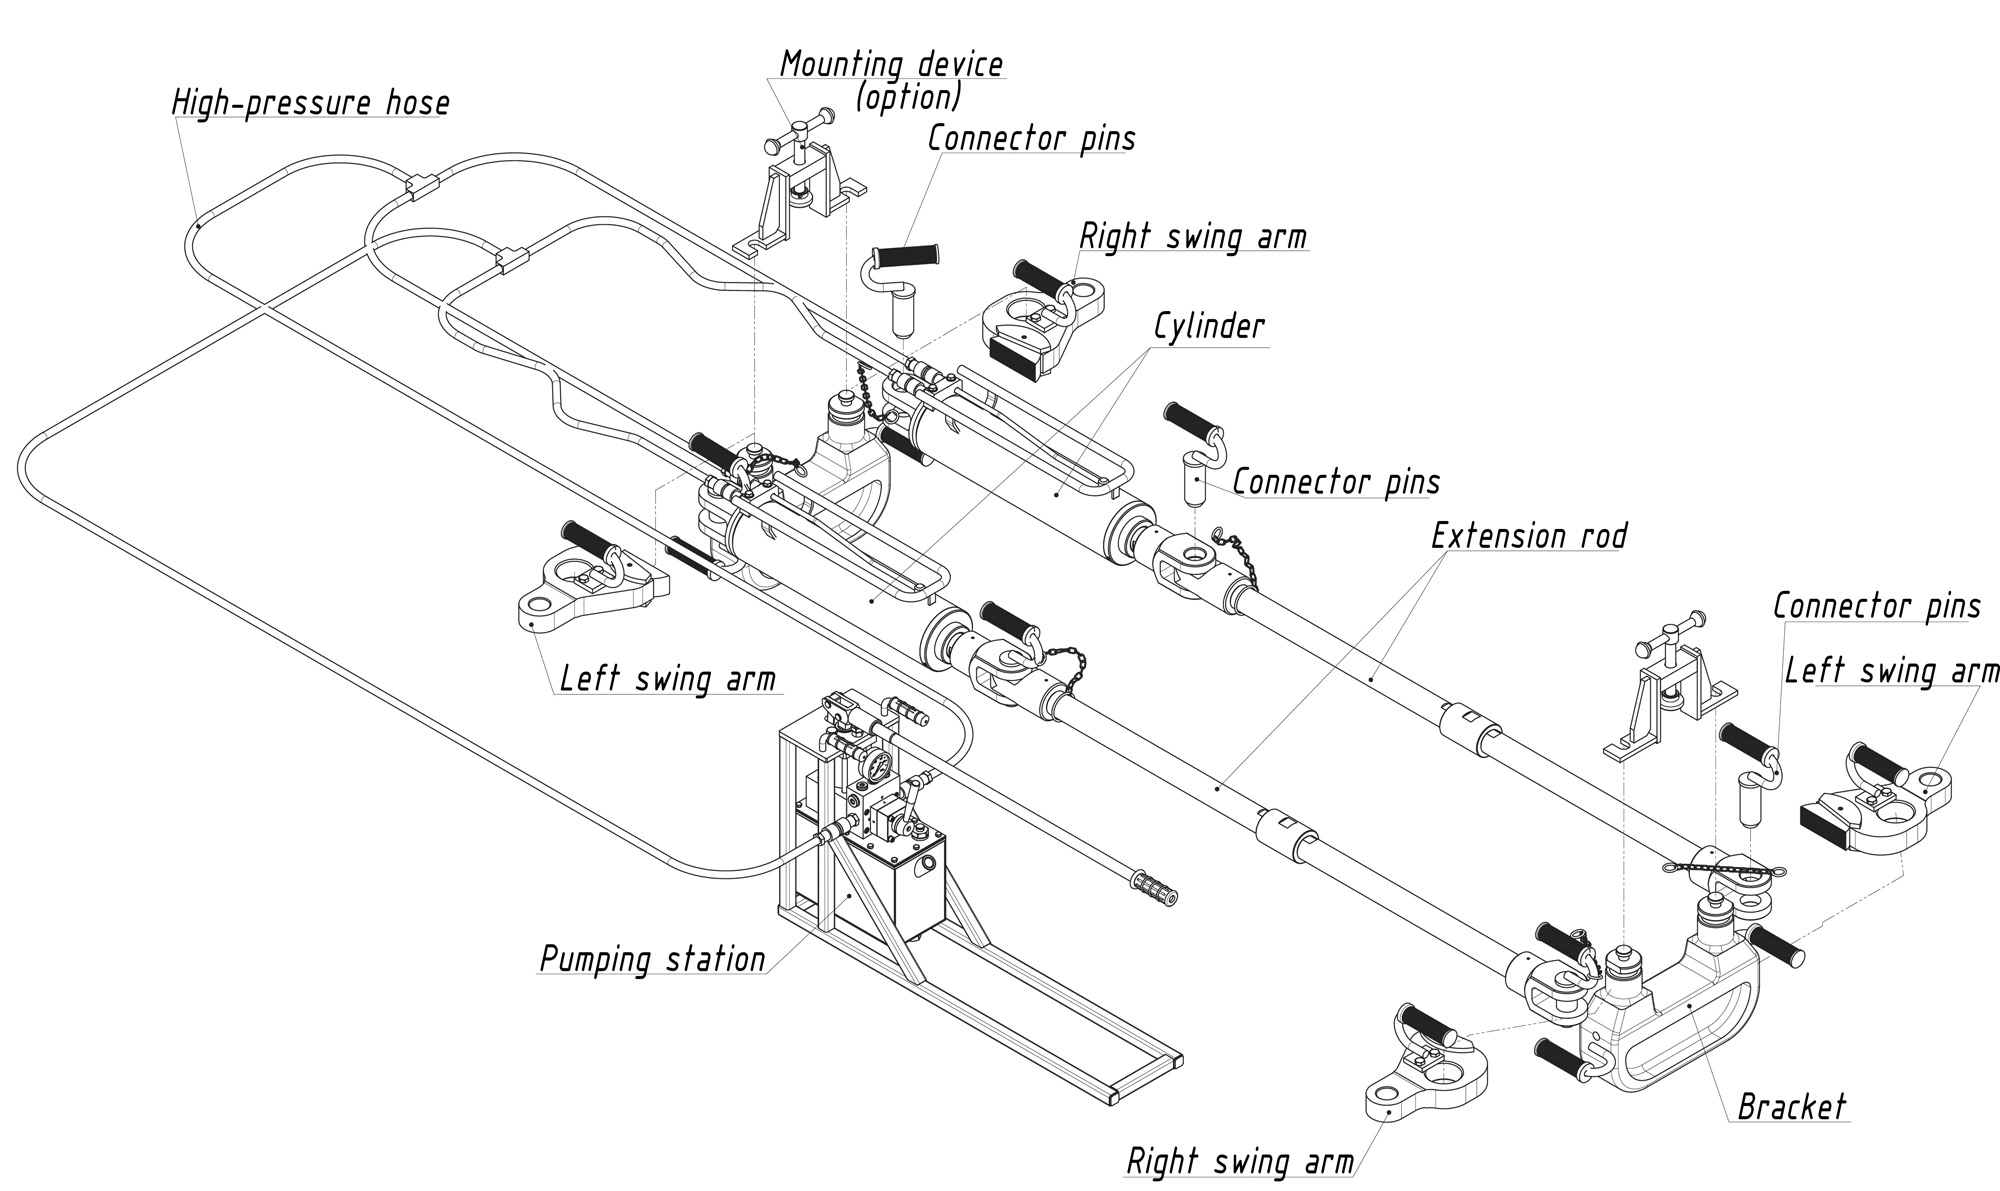 R700 hydraulic rail puller